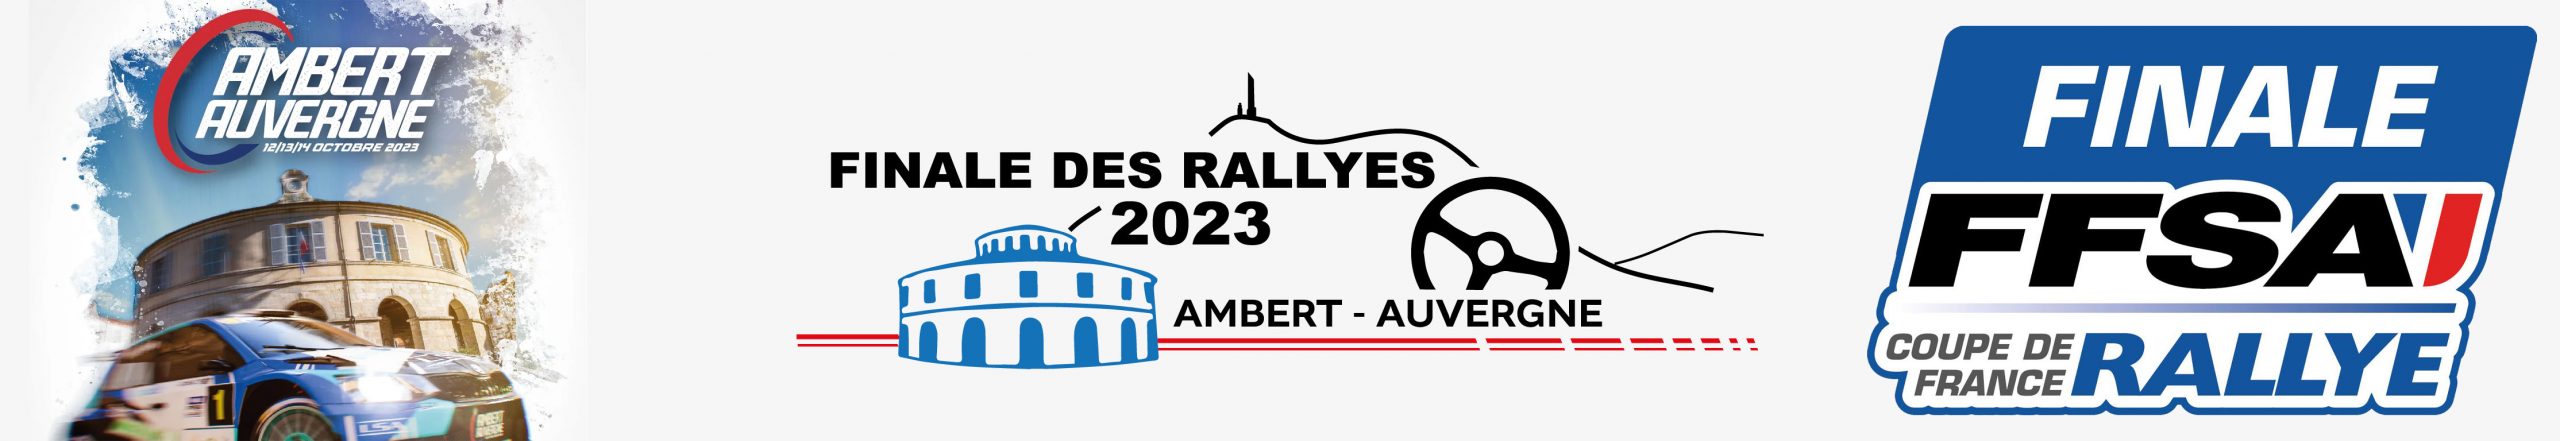 Présentation de la finale des rallyes Ambert 2023